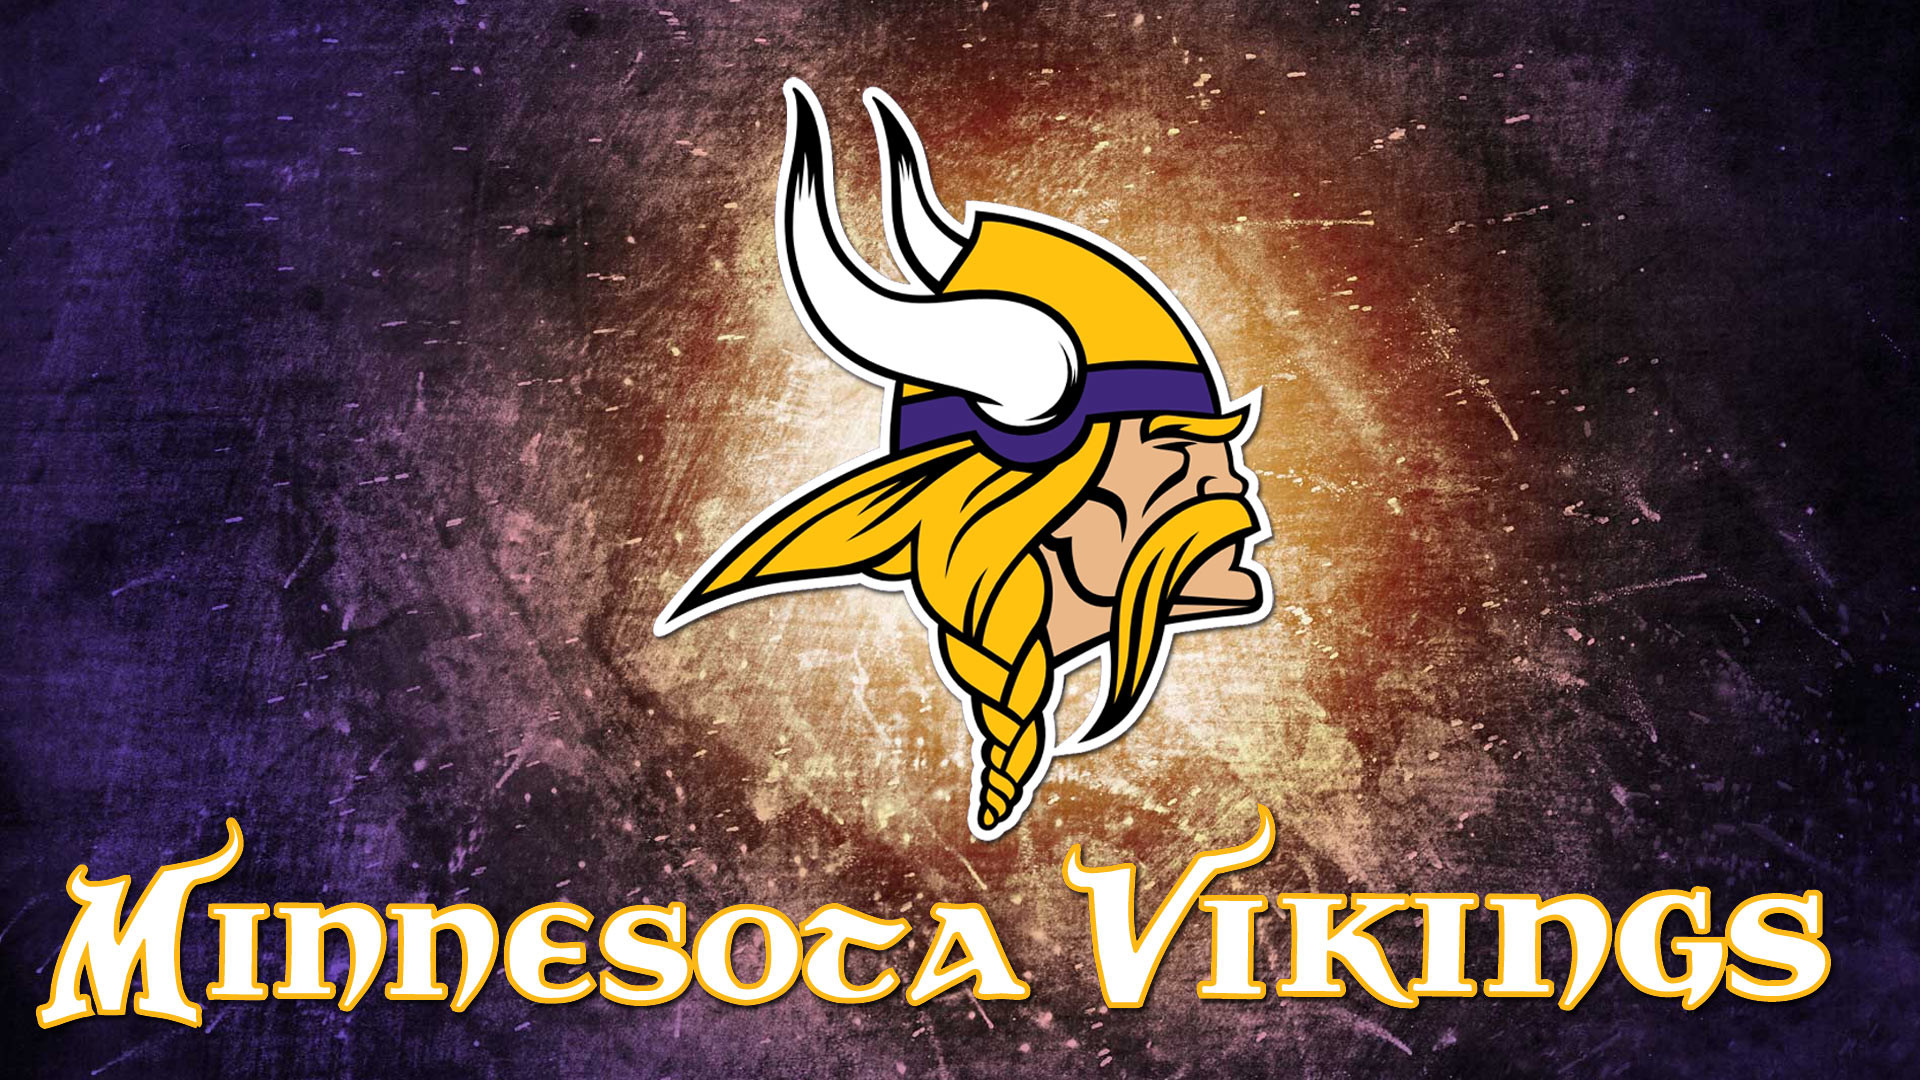 1920x1080 Download Minnesota Vikings logo HD 1080p Wallpaper size 1920X1080